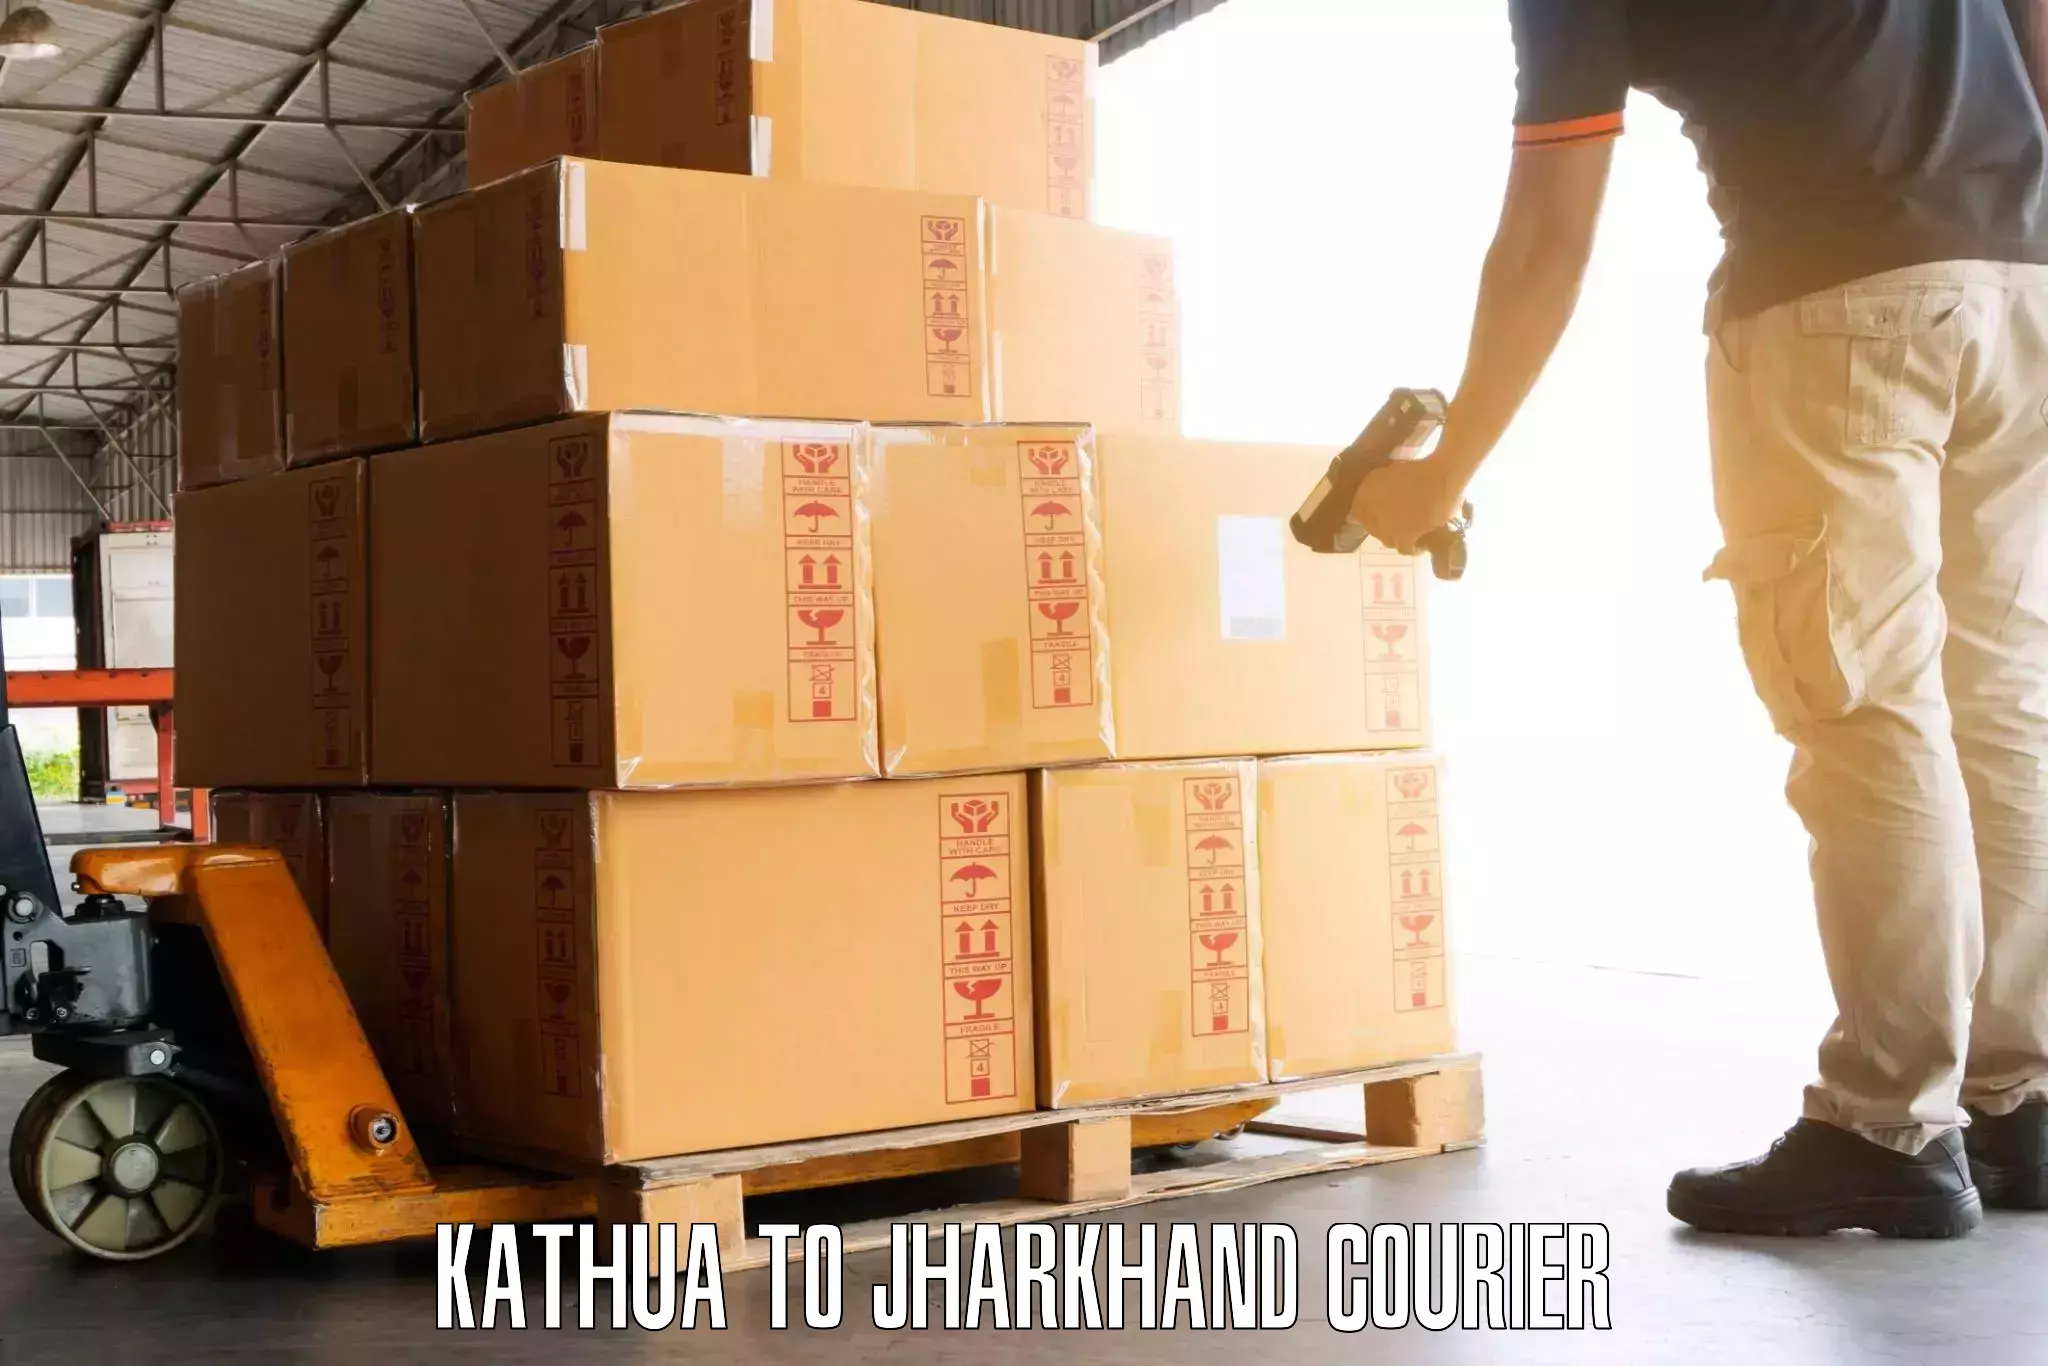 Digital baggage courier Kathua to Chakuliya